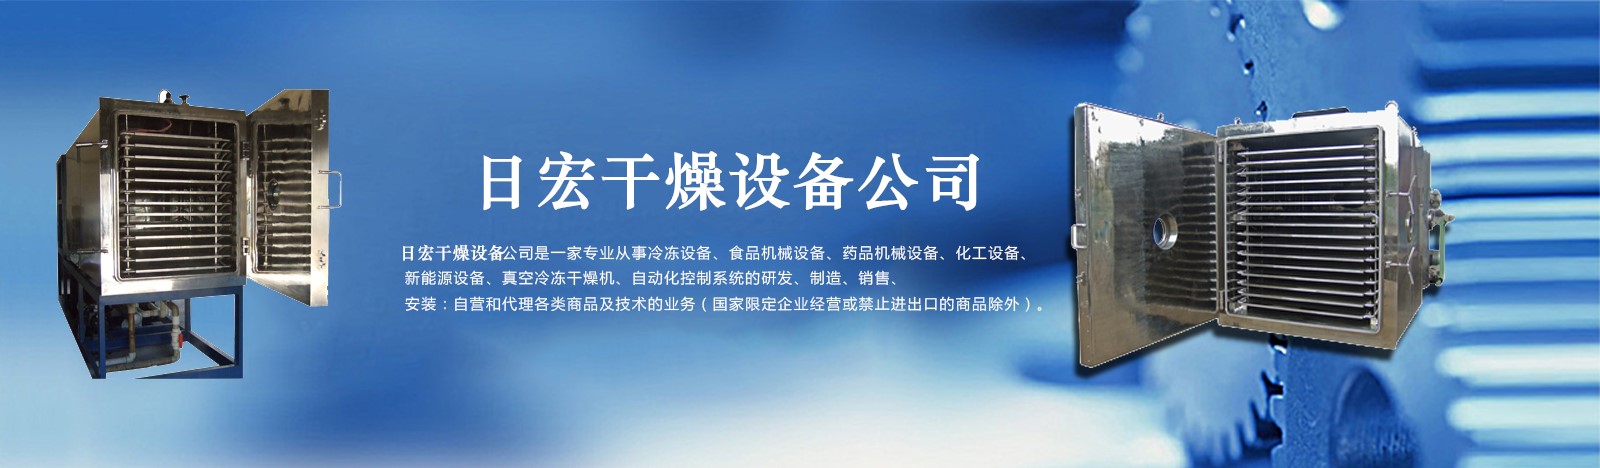 南京冻干机,南京食品冷冻干燥,南京真空冷冻干燥机,南京FD冷冻设备